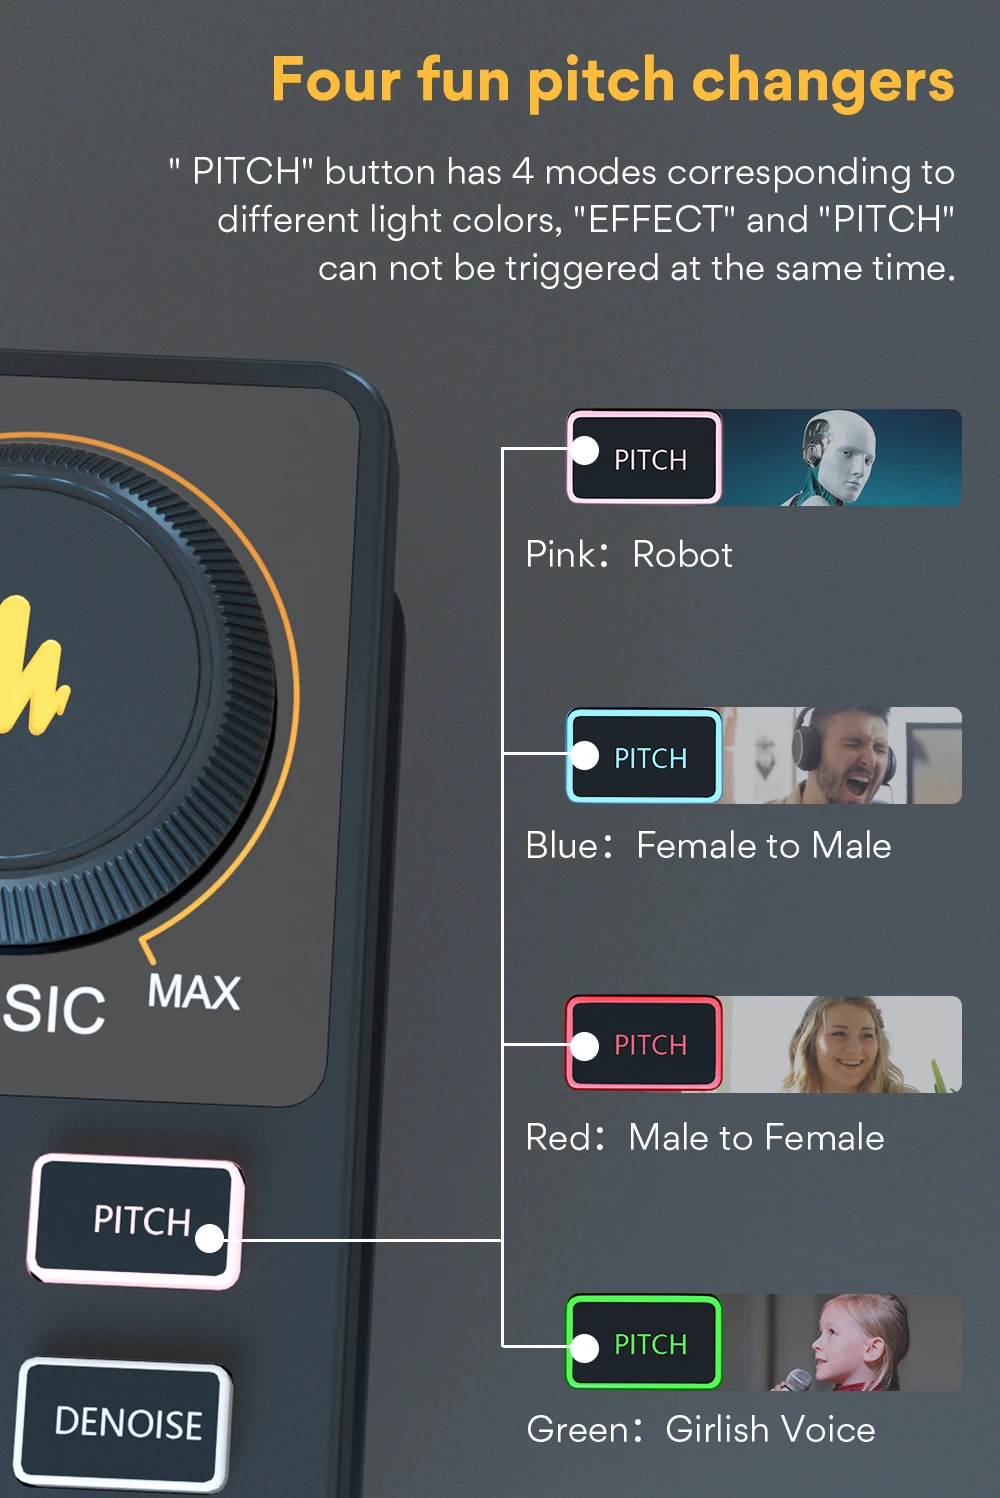 MAONO AM200 Odborná 12 Druhov Elektronických Zvukových Hudobných Audio Mixer Profesionálne Digitálne Audio Mixer Pre PC Karaoke v službe Youtube